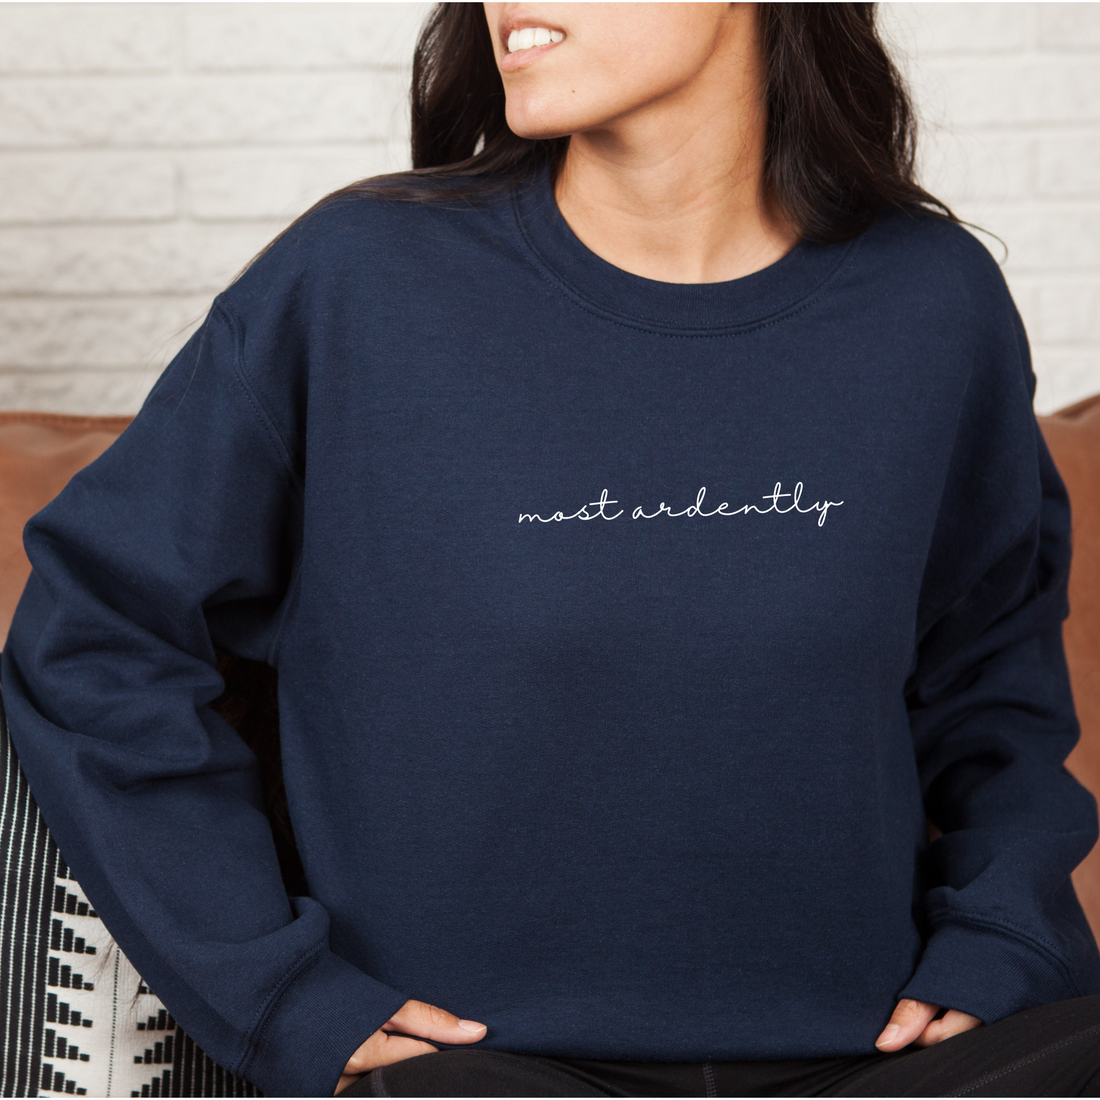 Little Women Band Sweatshirt – Wonder Witch Boutique